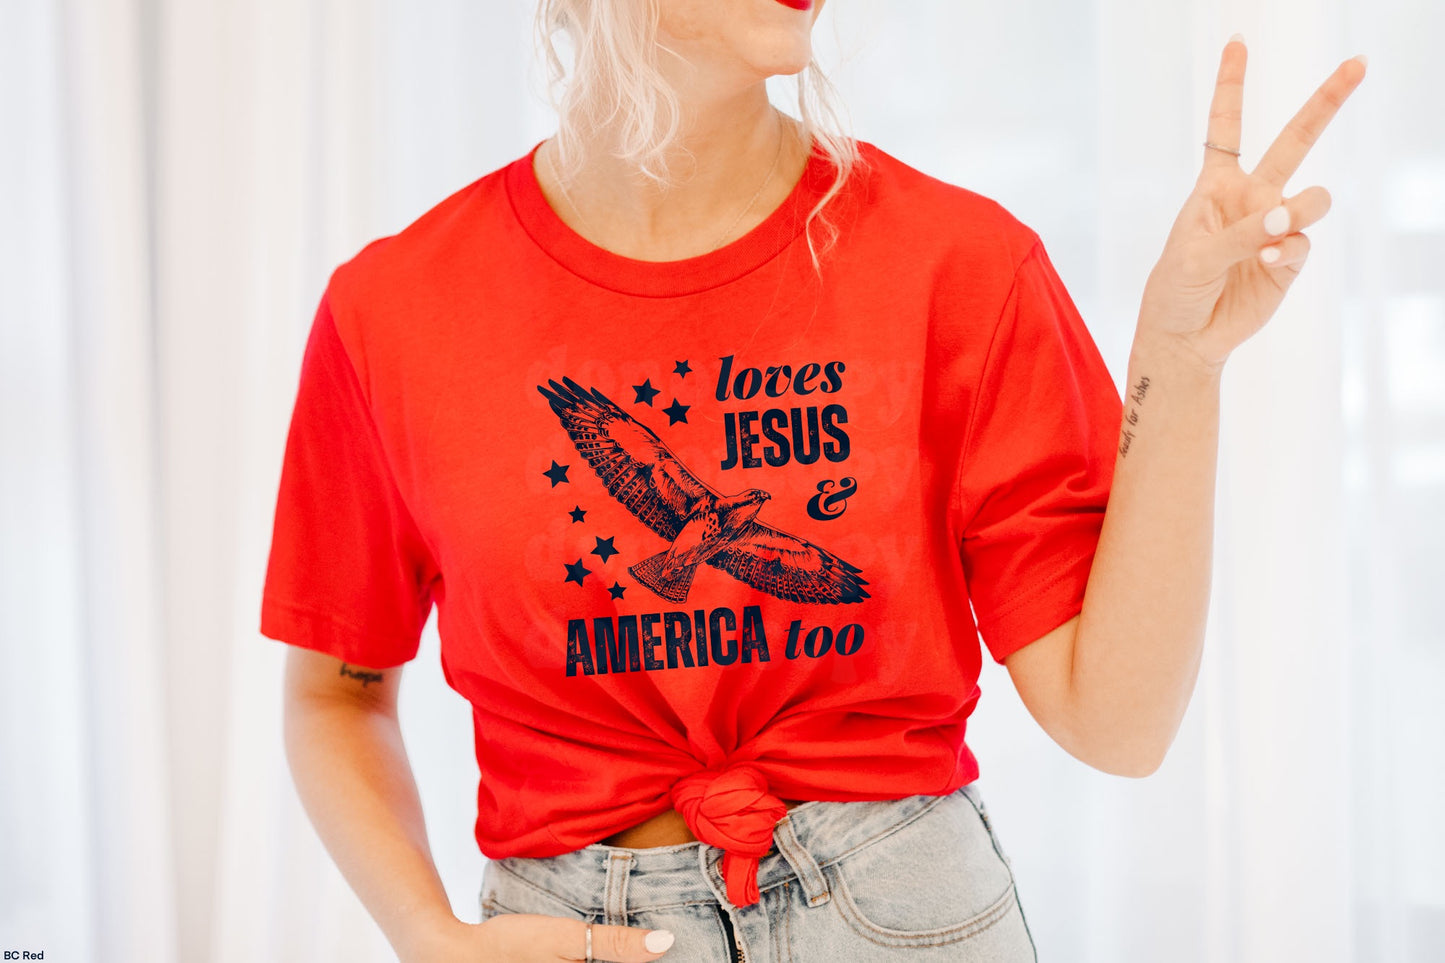 Loves Jesus And America Too DARK NAVY INK